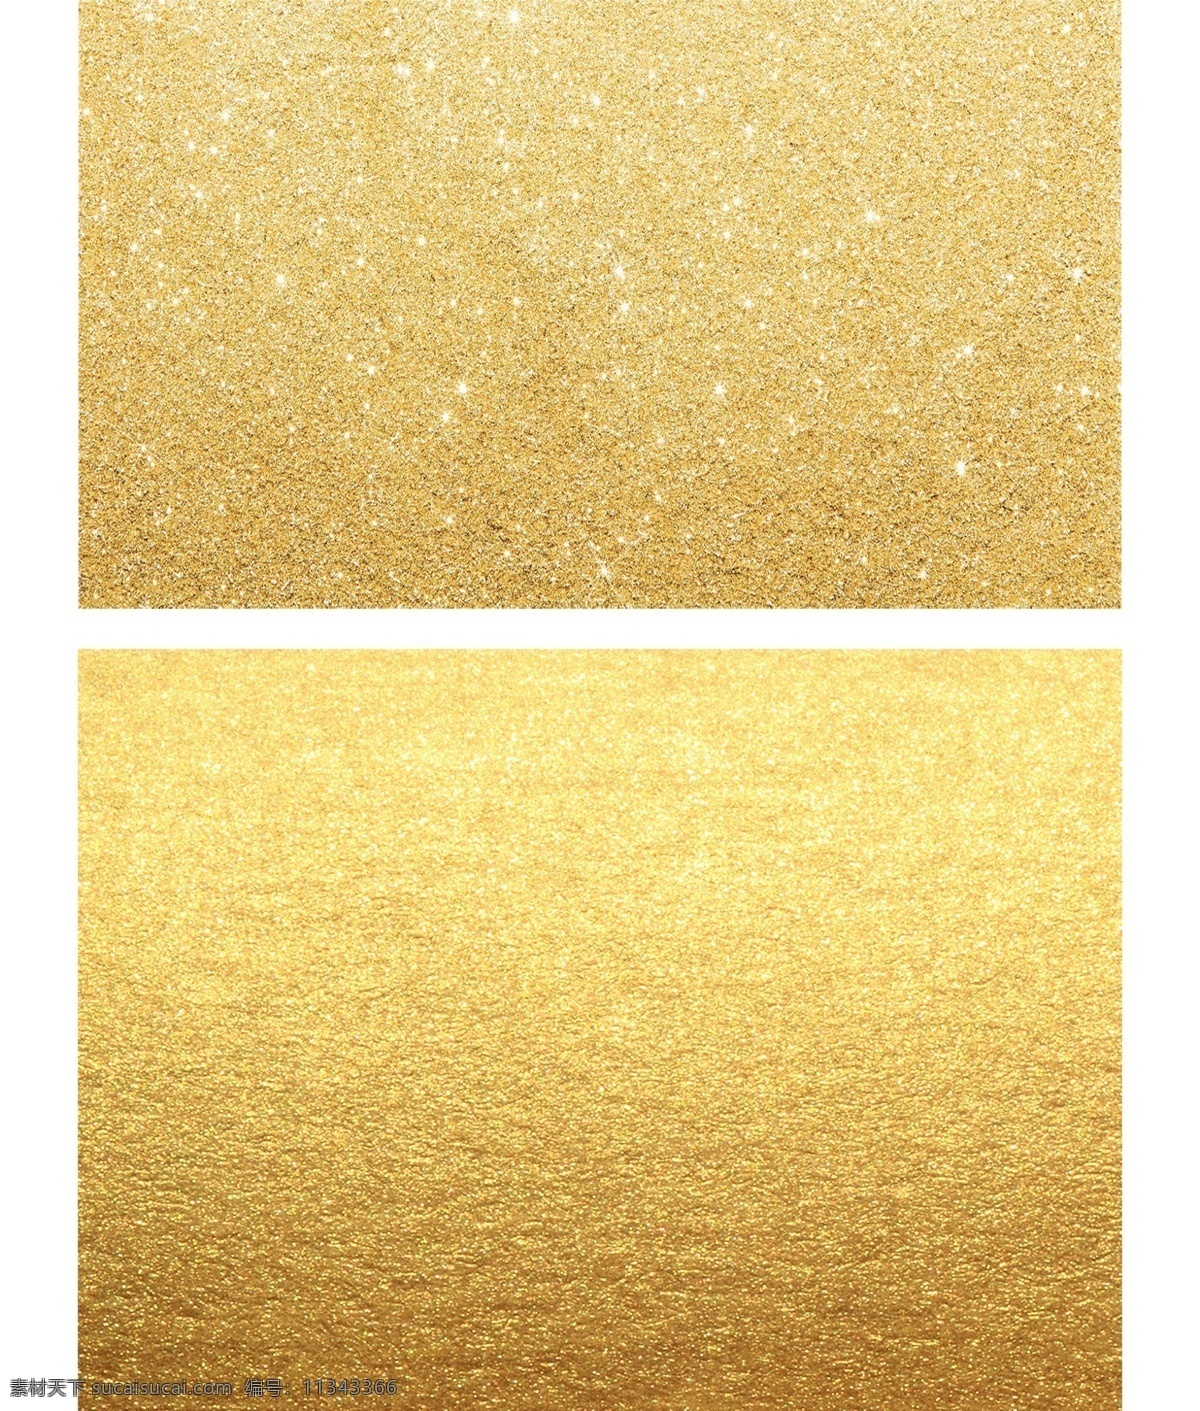 金色图片 金色 金色背景 金色底纹 金色素材 金色元素